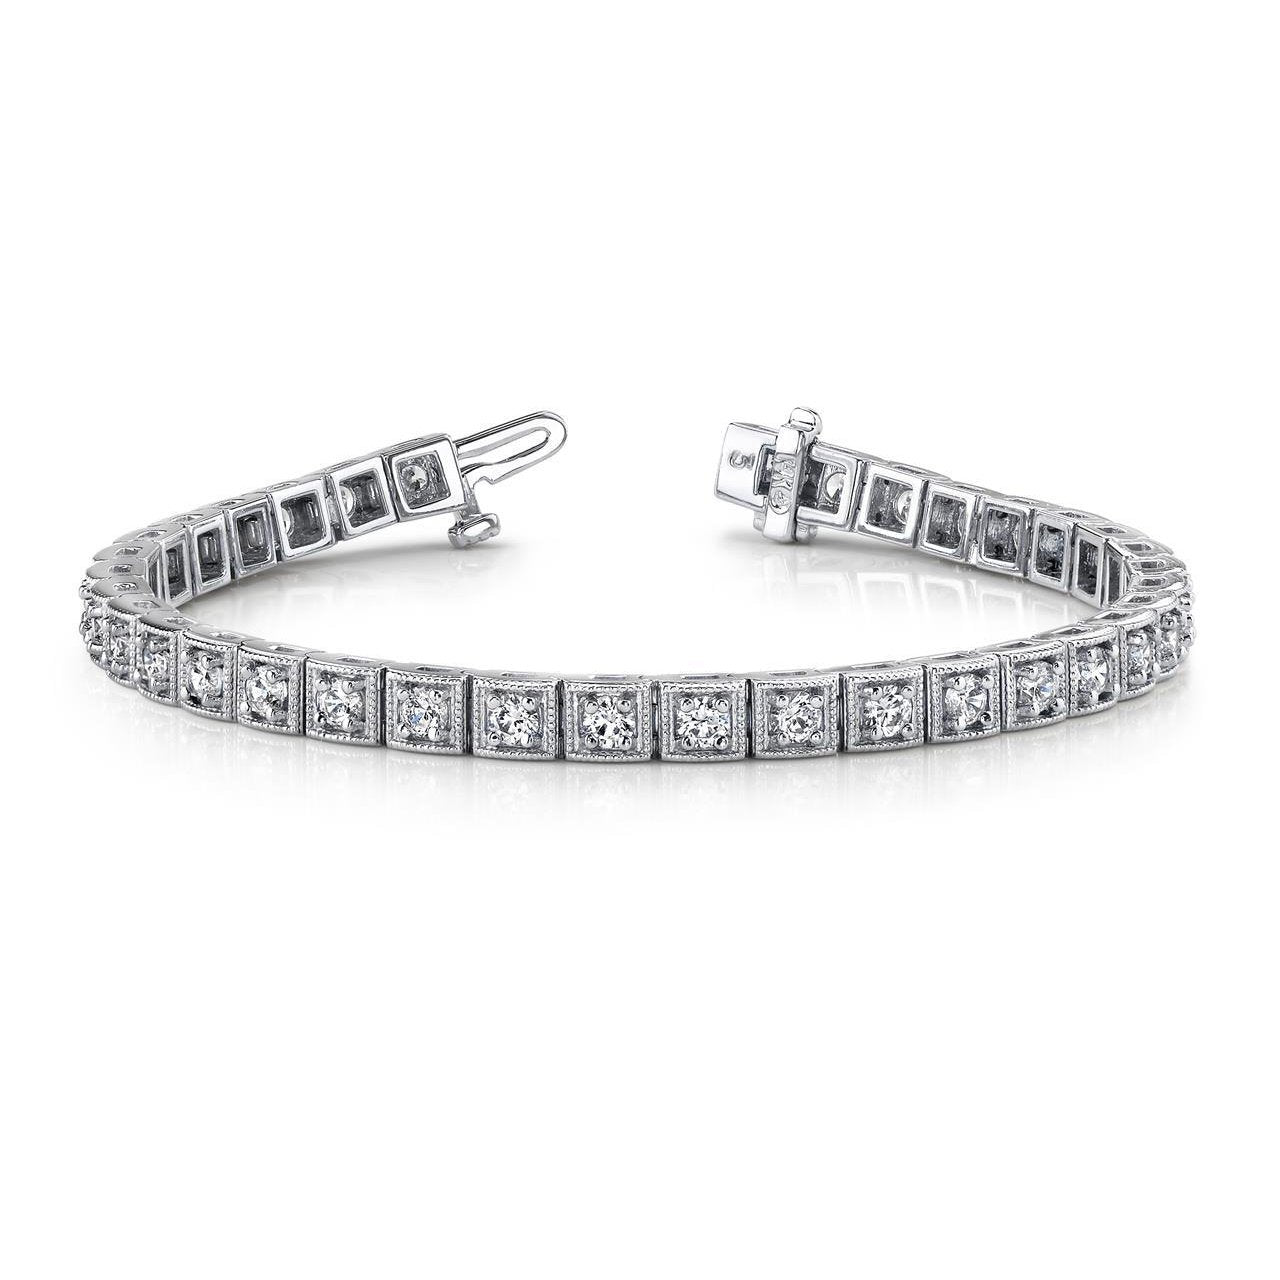 Superbe Bracelet A Maillons Carrés En Naturel Diamants Sertis De griffes Rondes Blanc 7 Ct